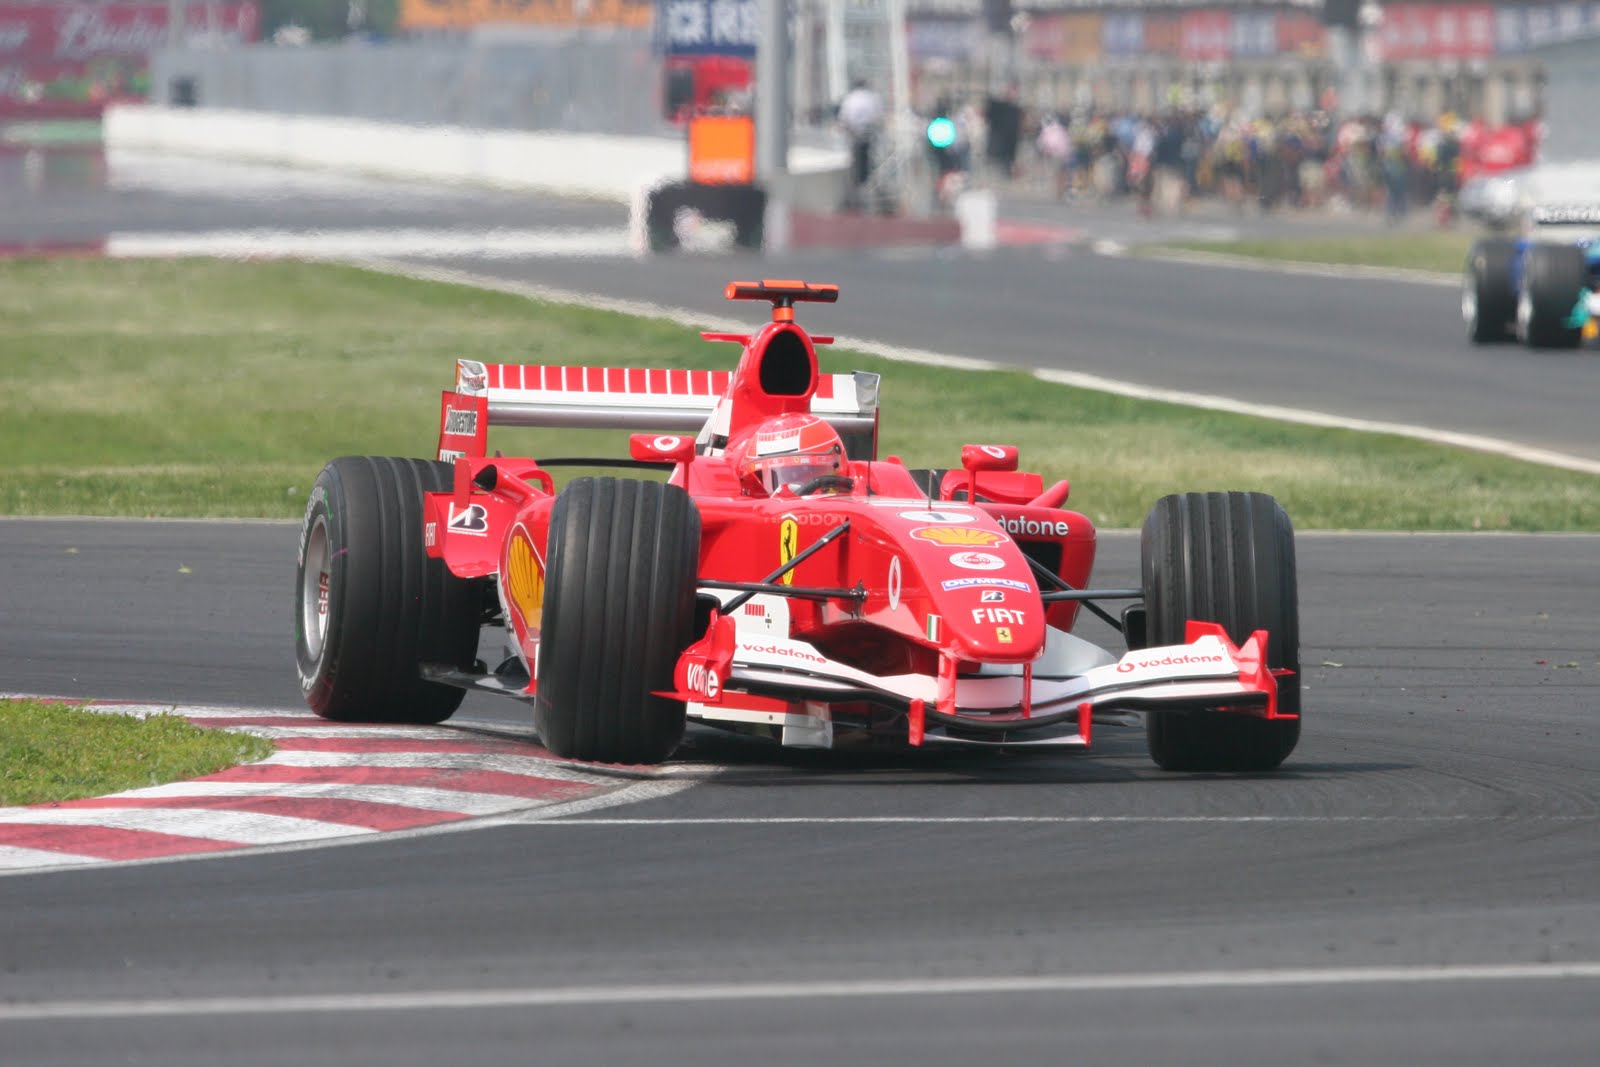 http://4.bp.blogspot.com/_0vQee8oZXq8/S_4vo38IRvI/AAAAAAAAQ98/YHywb47WIdk/s1600/Ferrari+F1+2005+.jpg